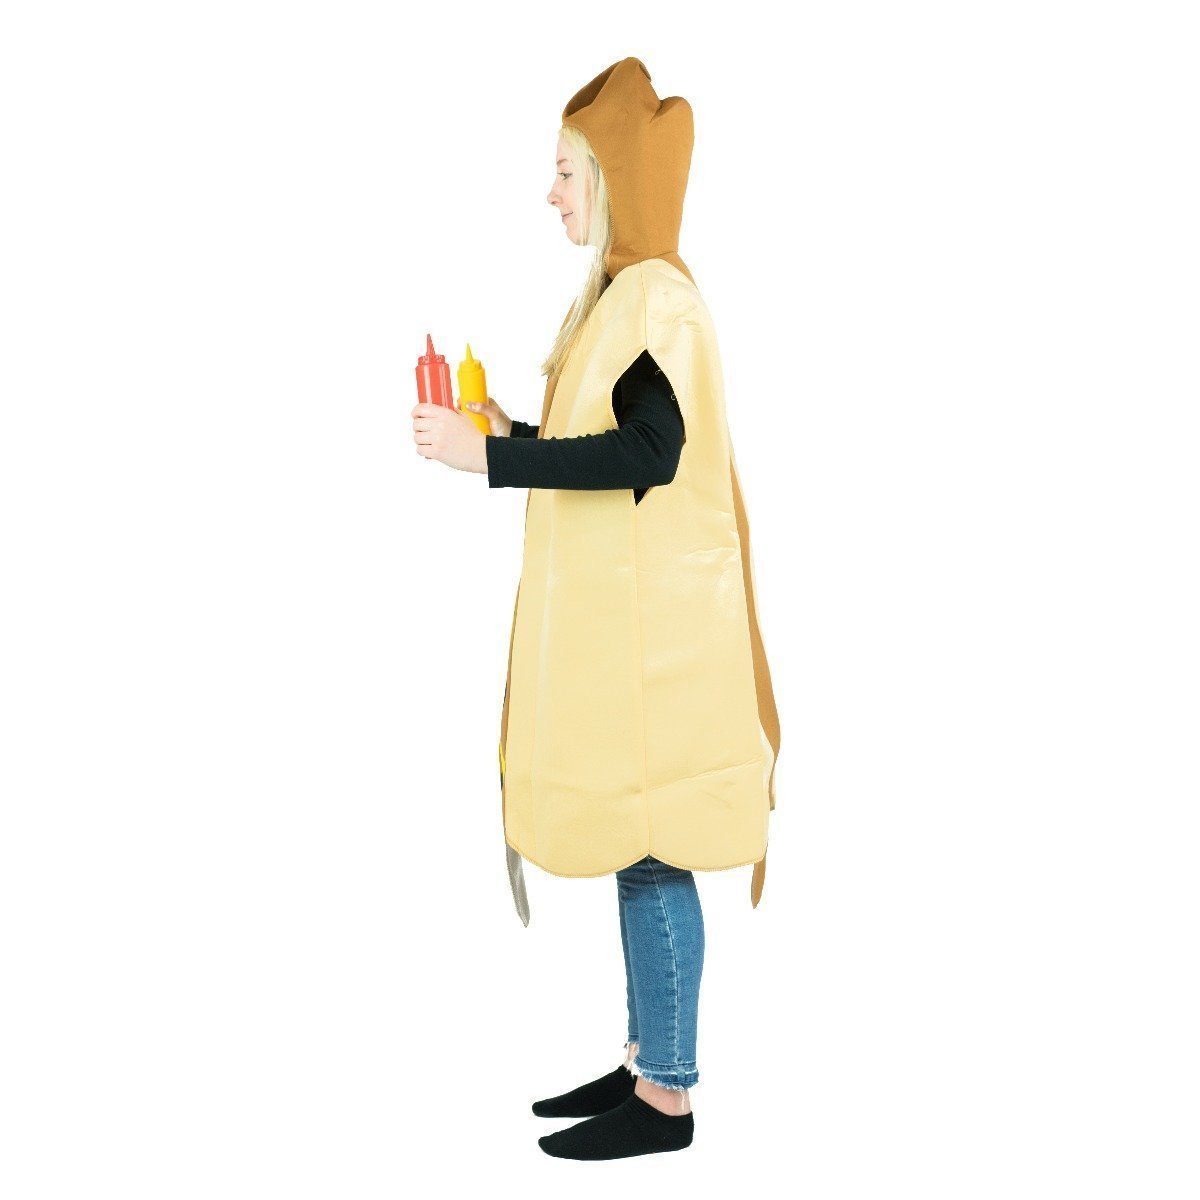 Fancy Dress - Hot Dog Costume